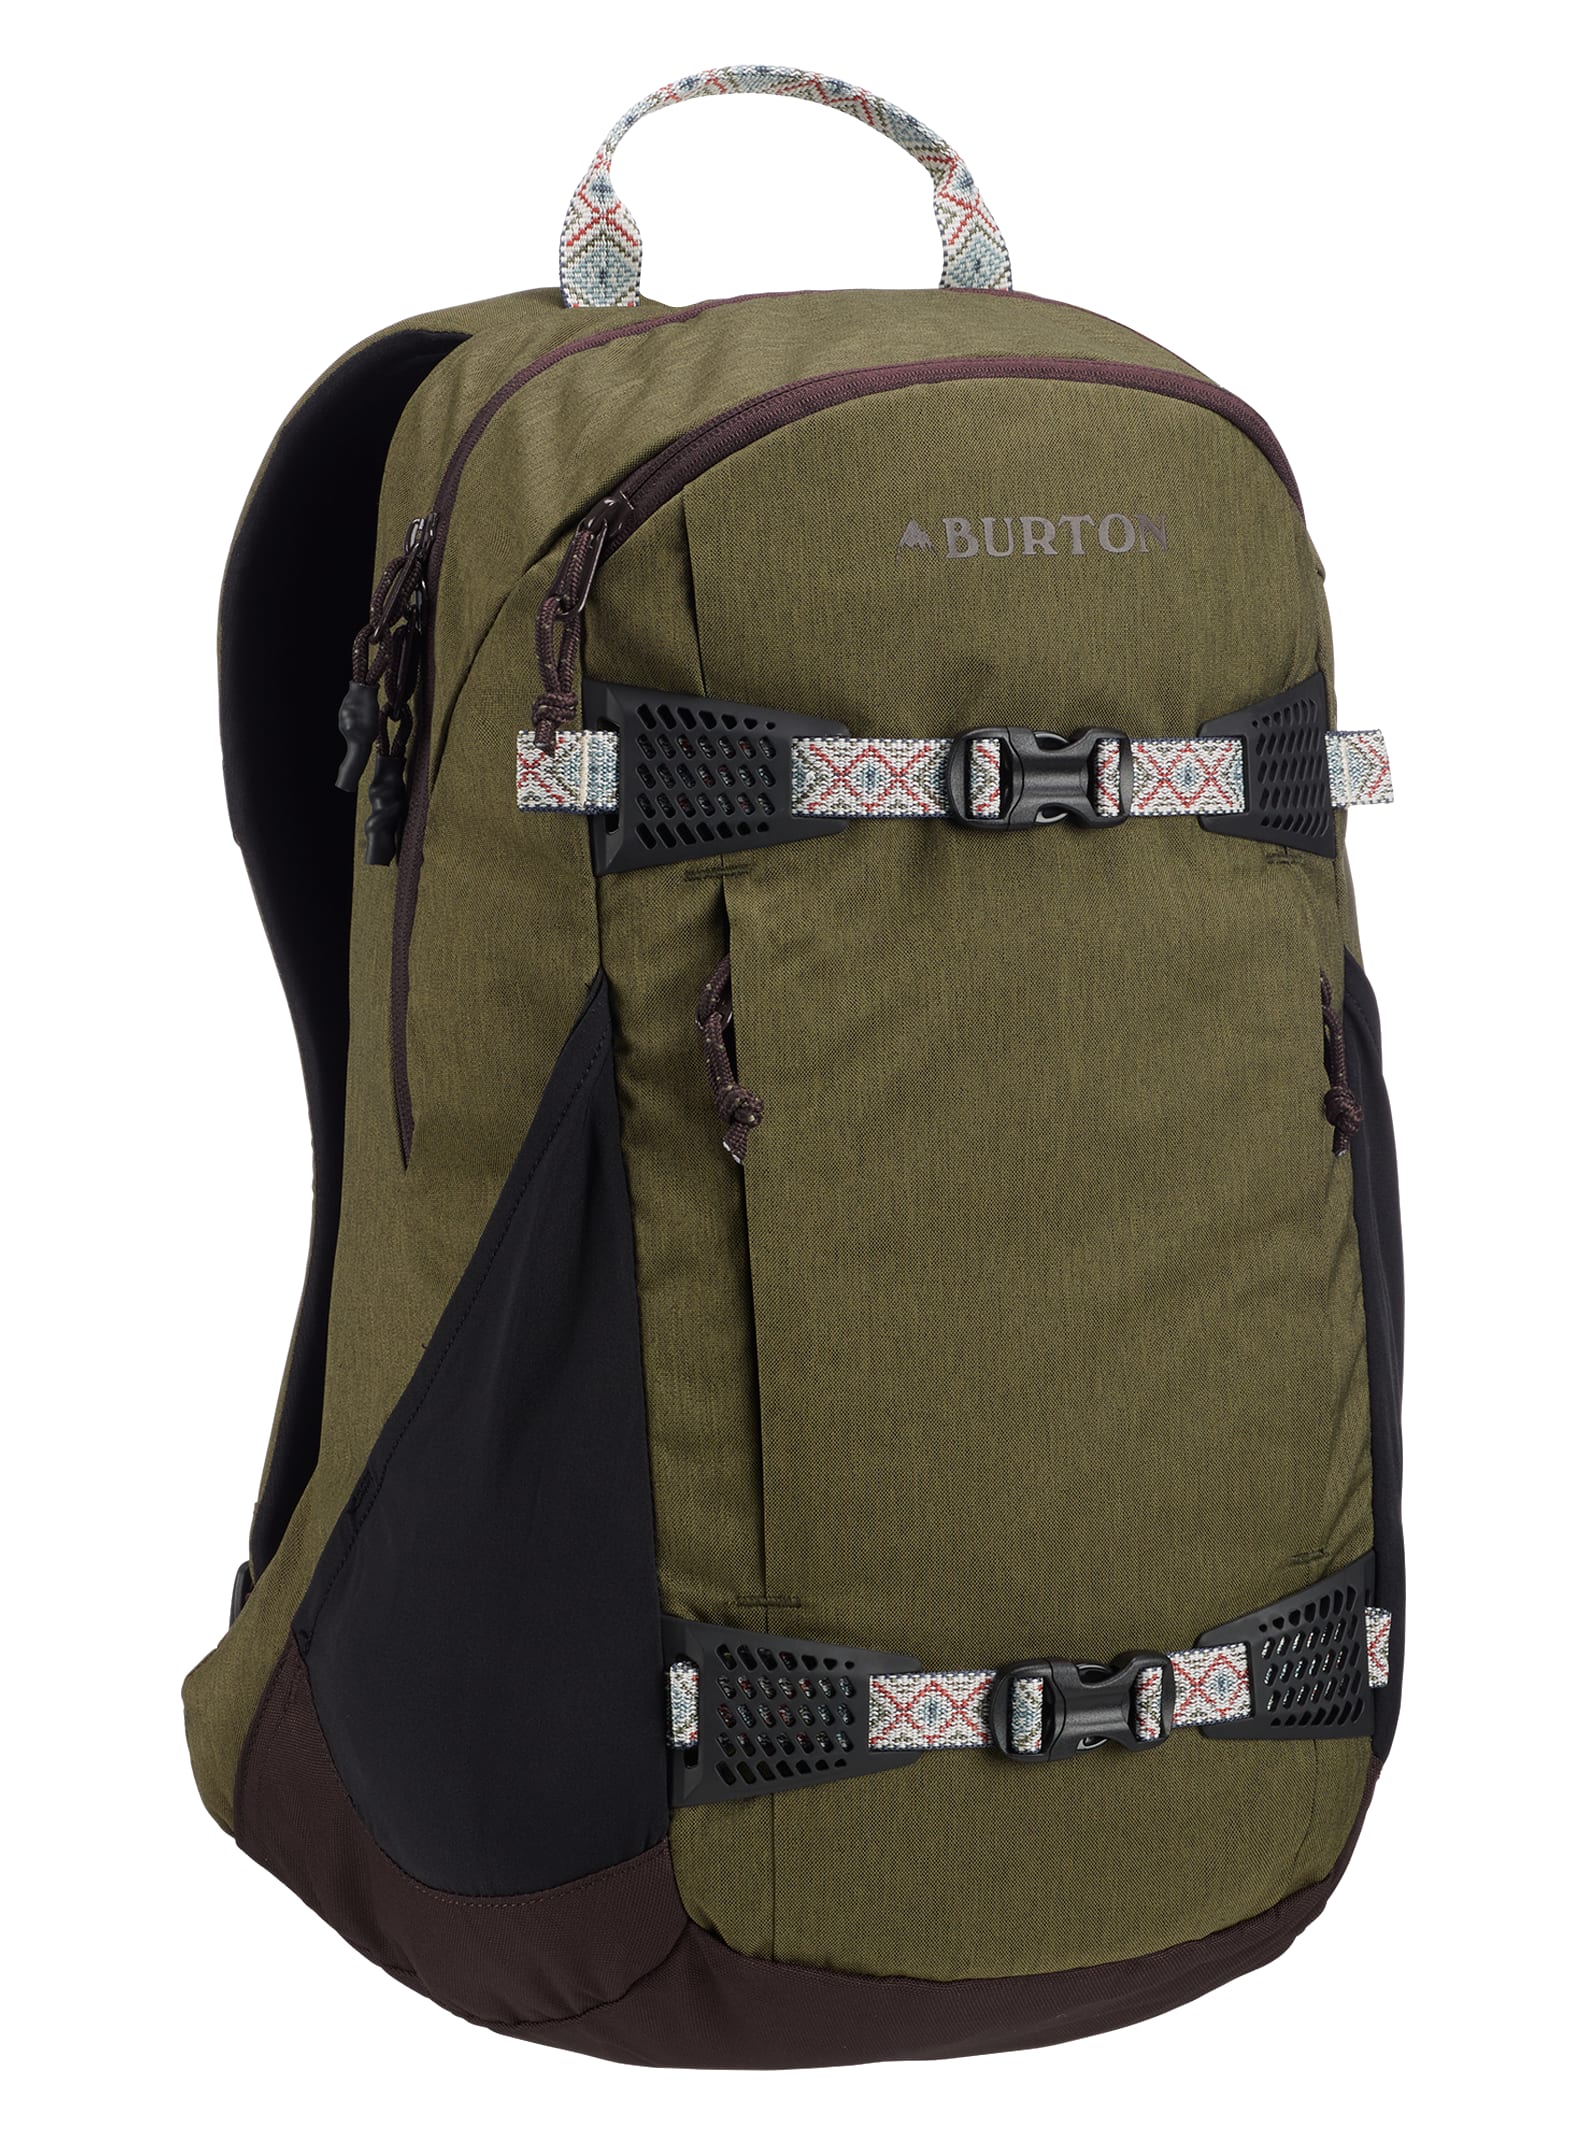 Burton Day Hiker 25L Backpack | Burton.com Spring / Summer 2019 EE